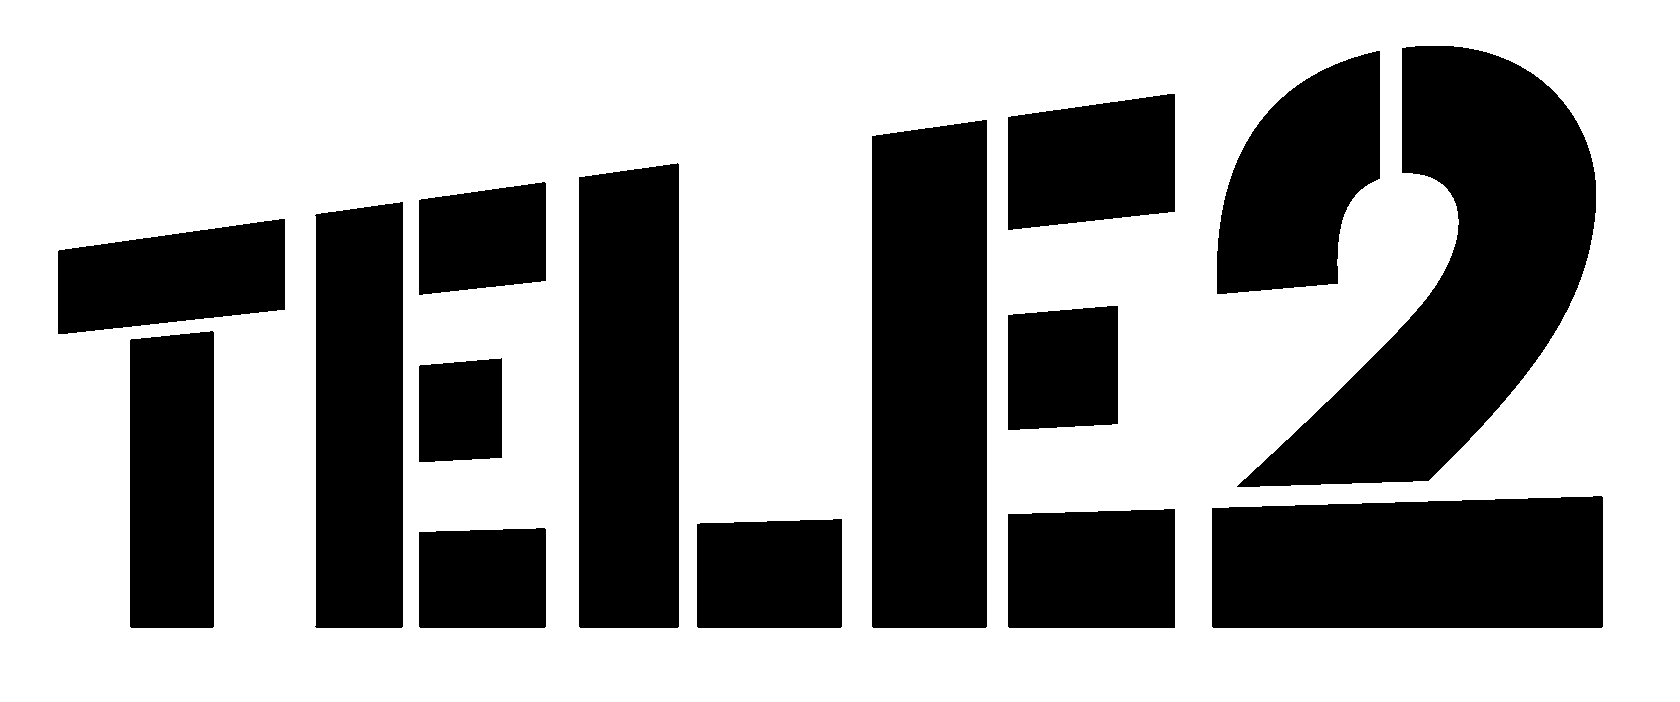 Логотип Теле2 на черном фоне